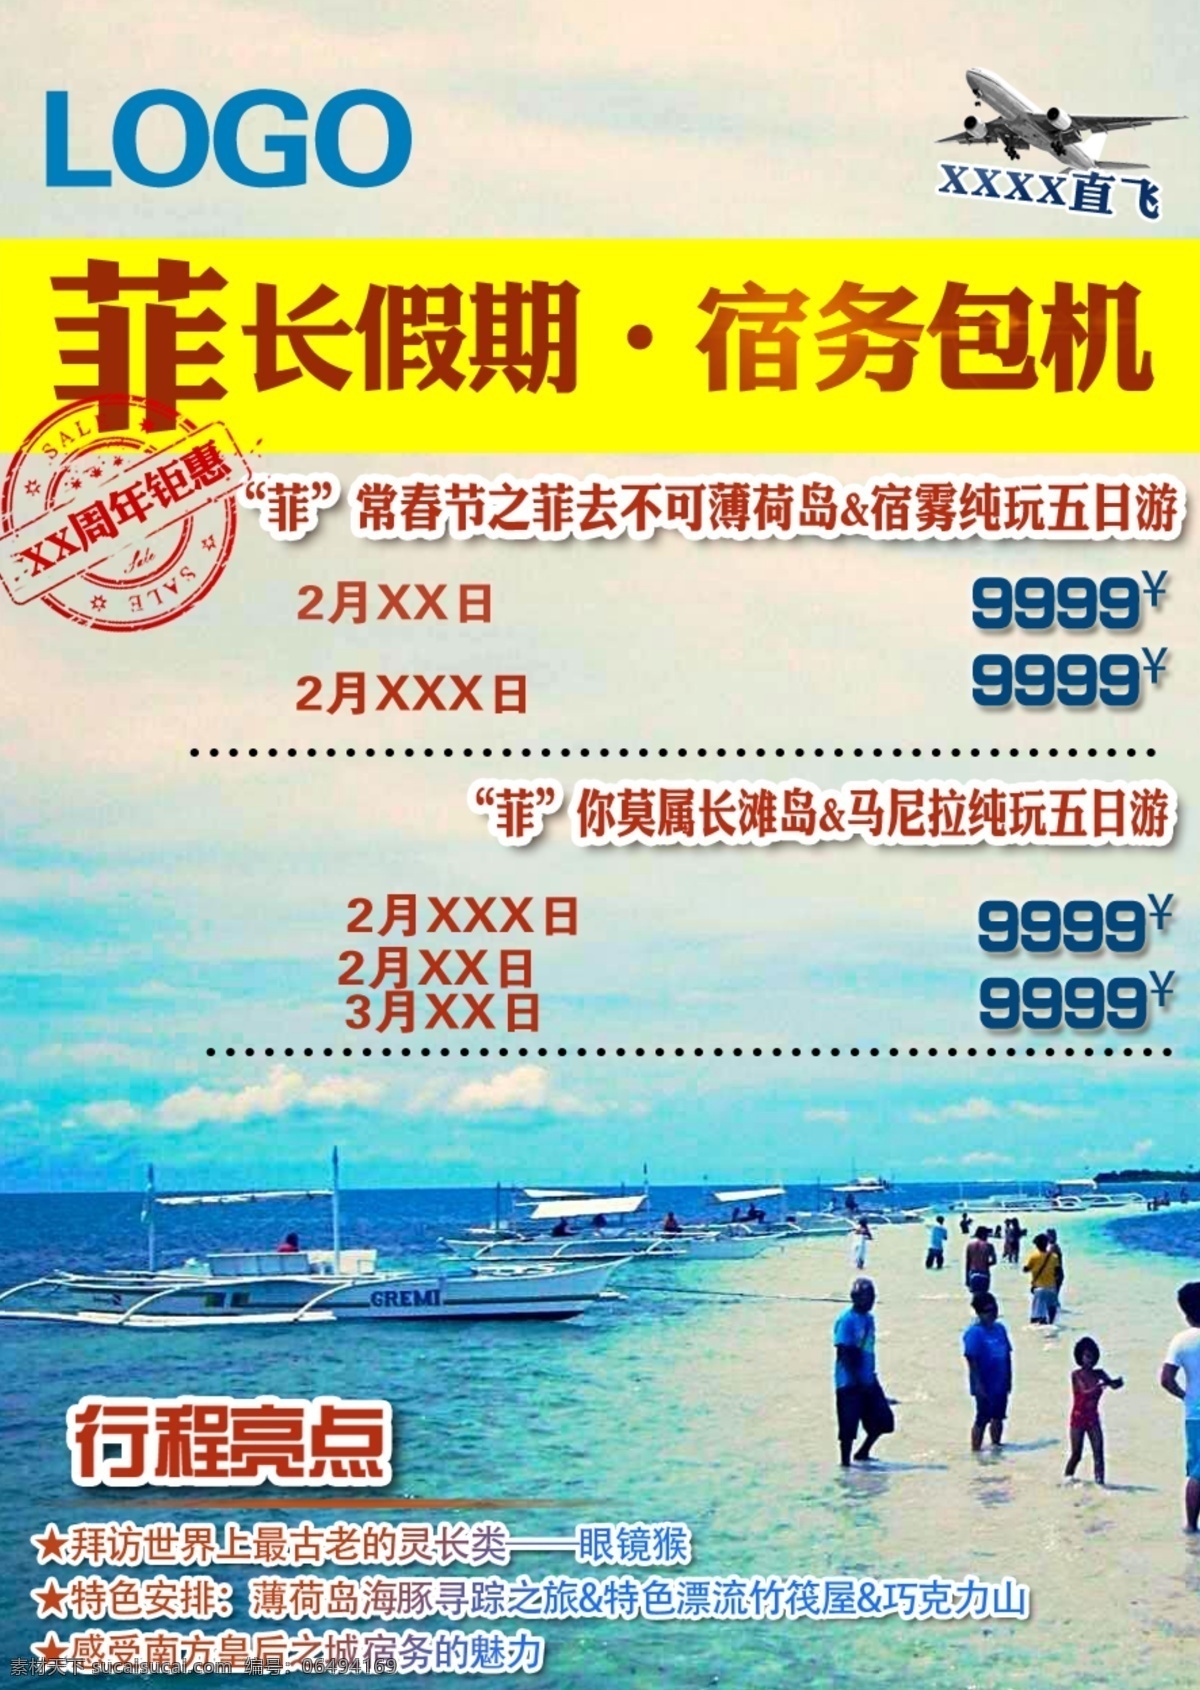 菲律宾 海岛 旅游 宿务 旅游广告 广告 蓝色 包机 假期 暑期 海边 白色